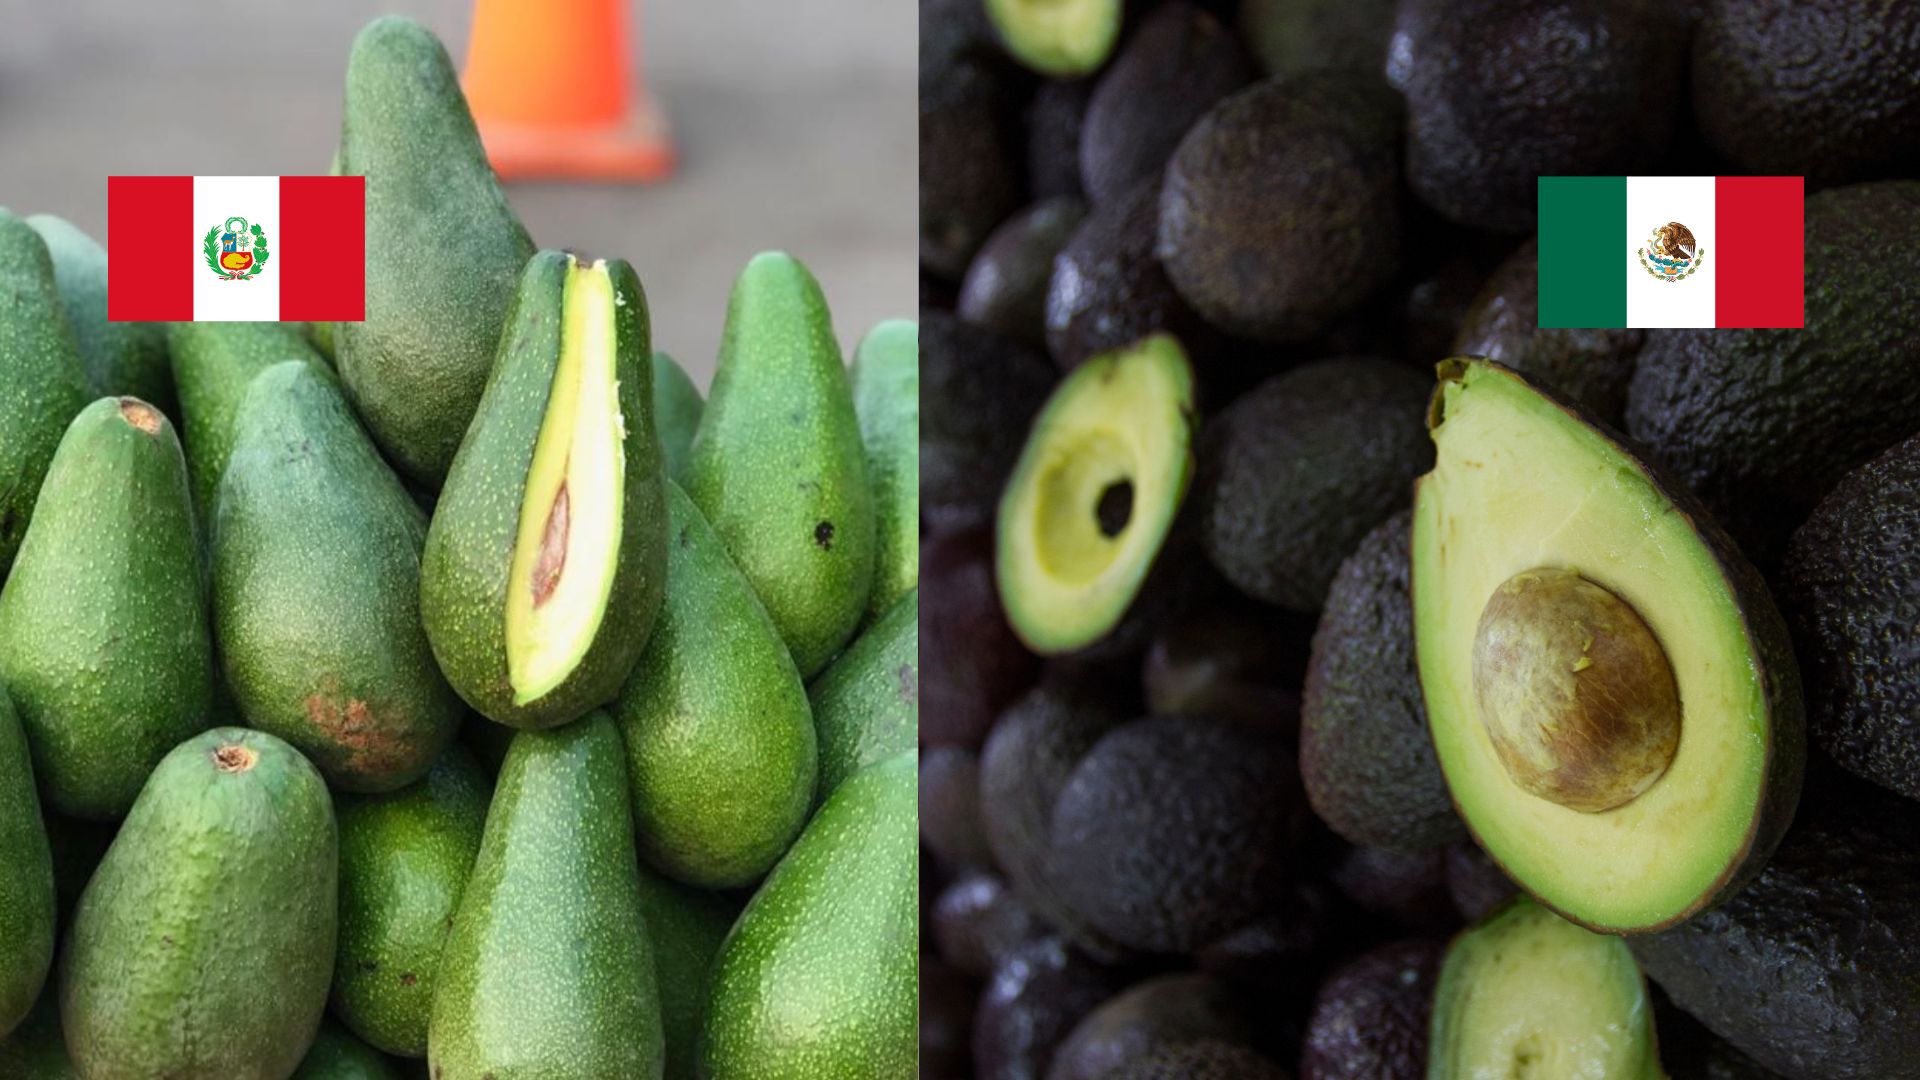 ¿Palta de Perú o aguacate de México? Chat GPT revela dónde se originó esta exquisita fruta también llamada “oro verde”